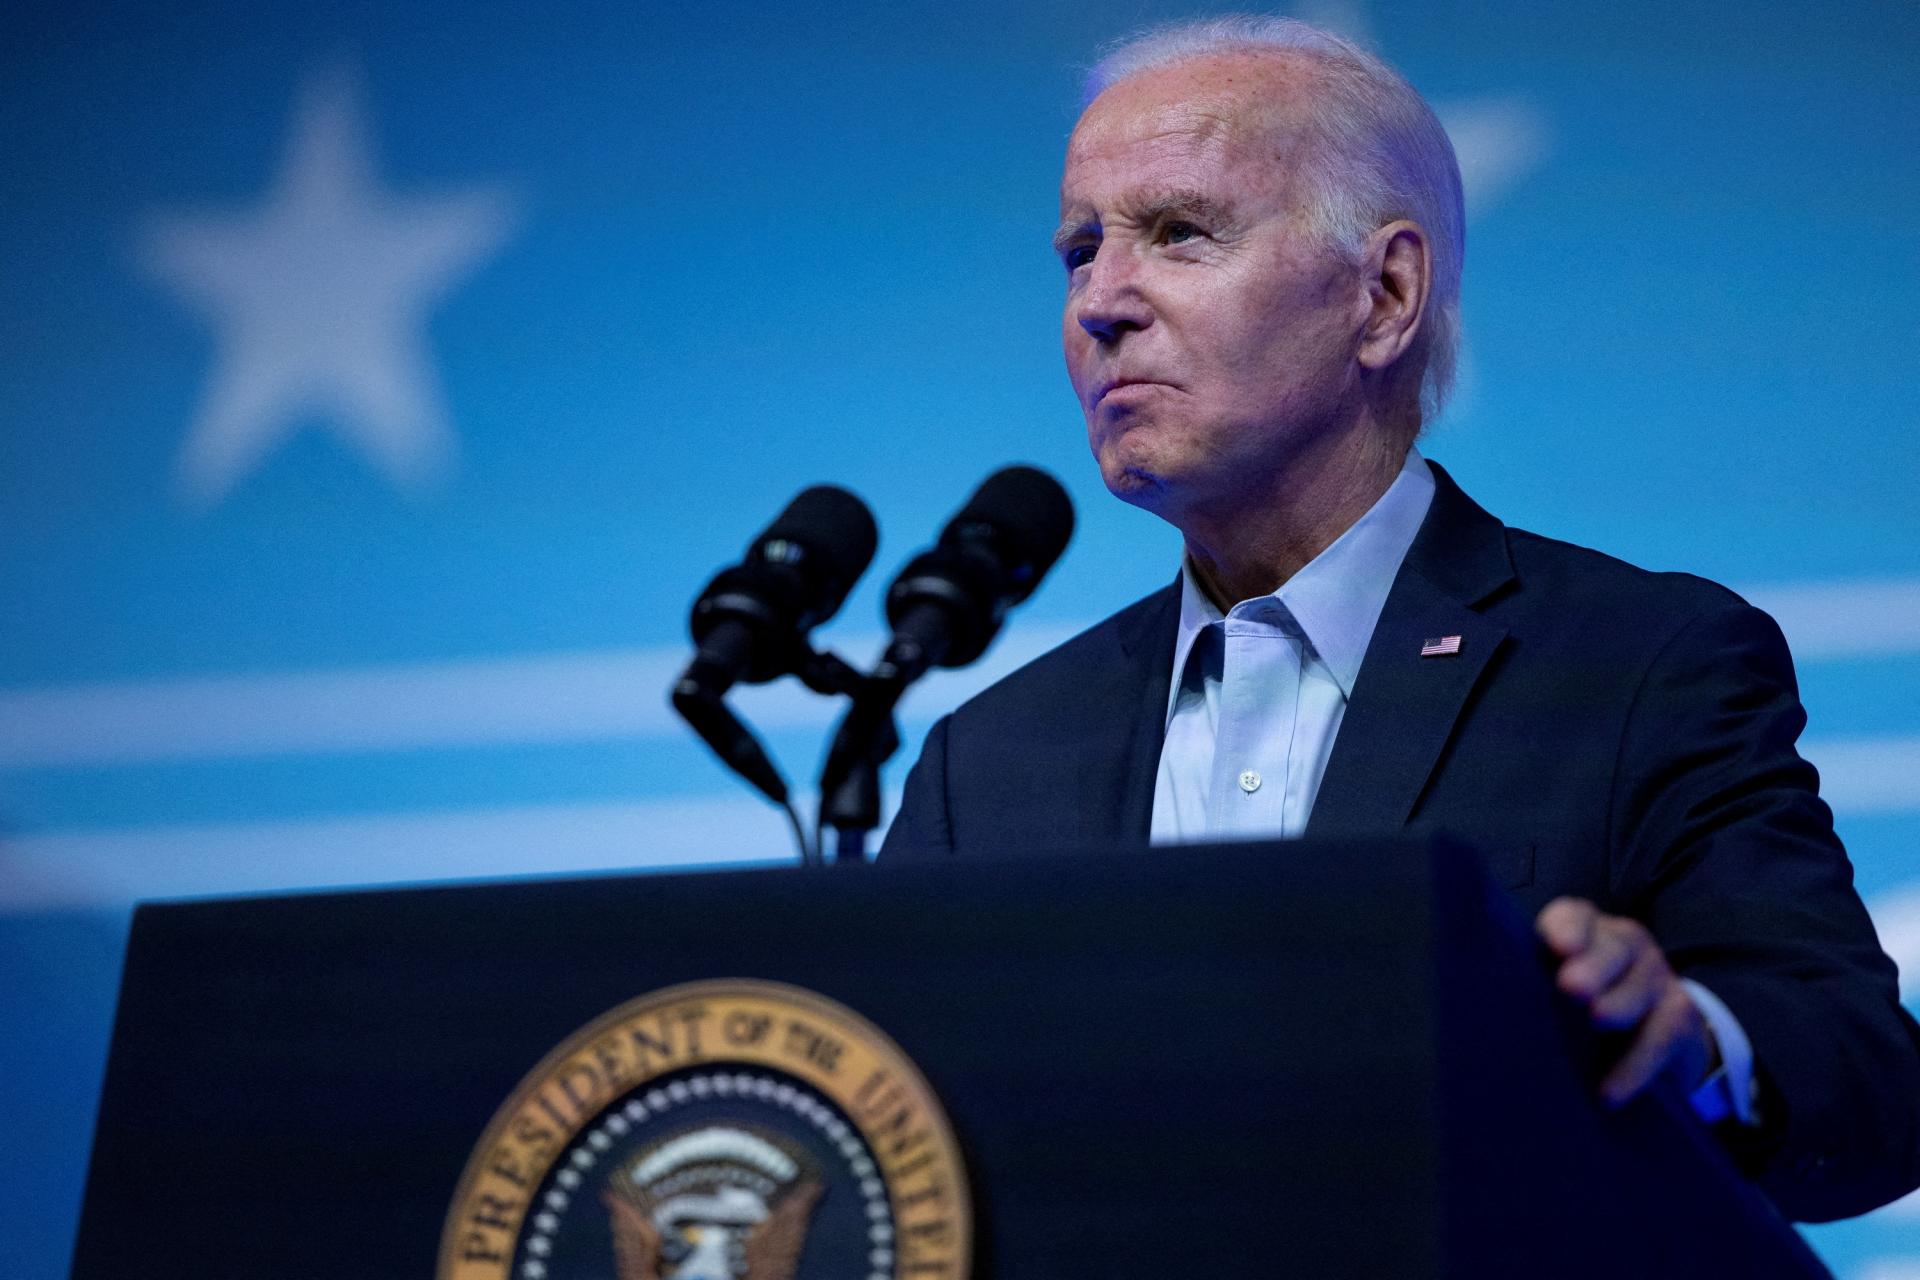 Biden en Pennsylvanie a pris la parole lors du premier rassemblement de sa campagne électorale, essayant d’atteindre les Blancs